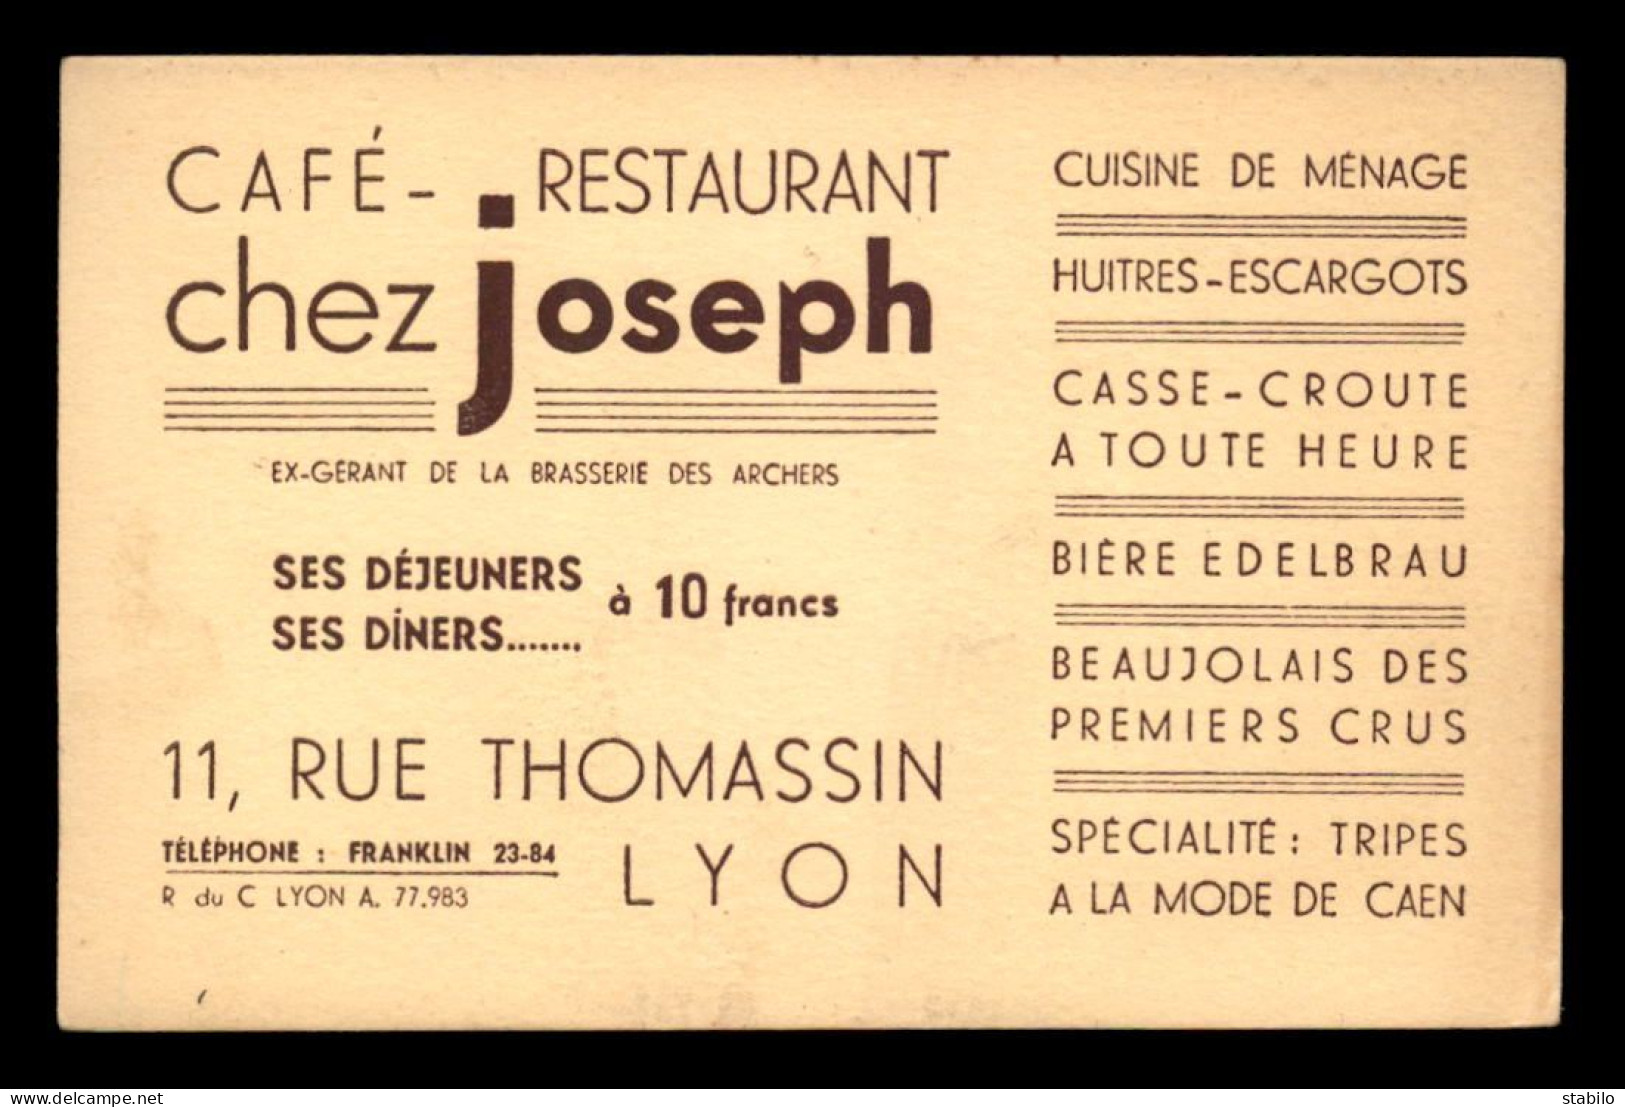 CARTE DE VISITE - CAFE-RESTAURANT "CHEZ JOSEPH" 11 RUE THOMASSIN, LYON - FORMAT 8.5 X 13 CM - Cartes De Visite